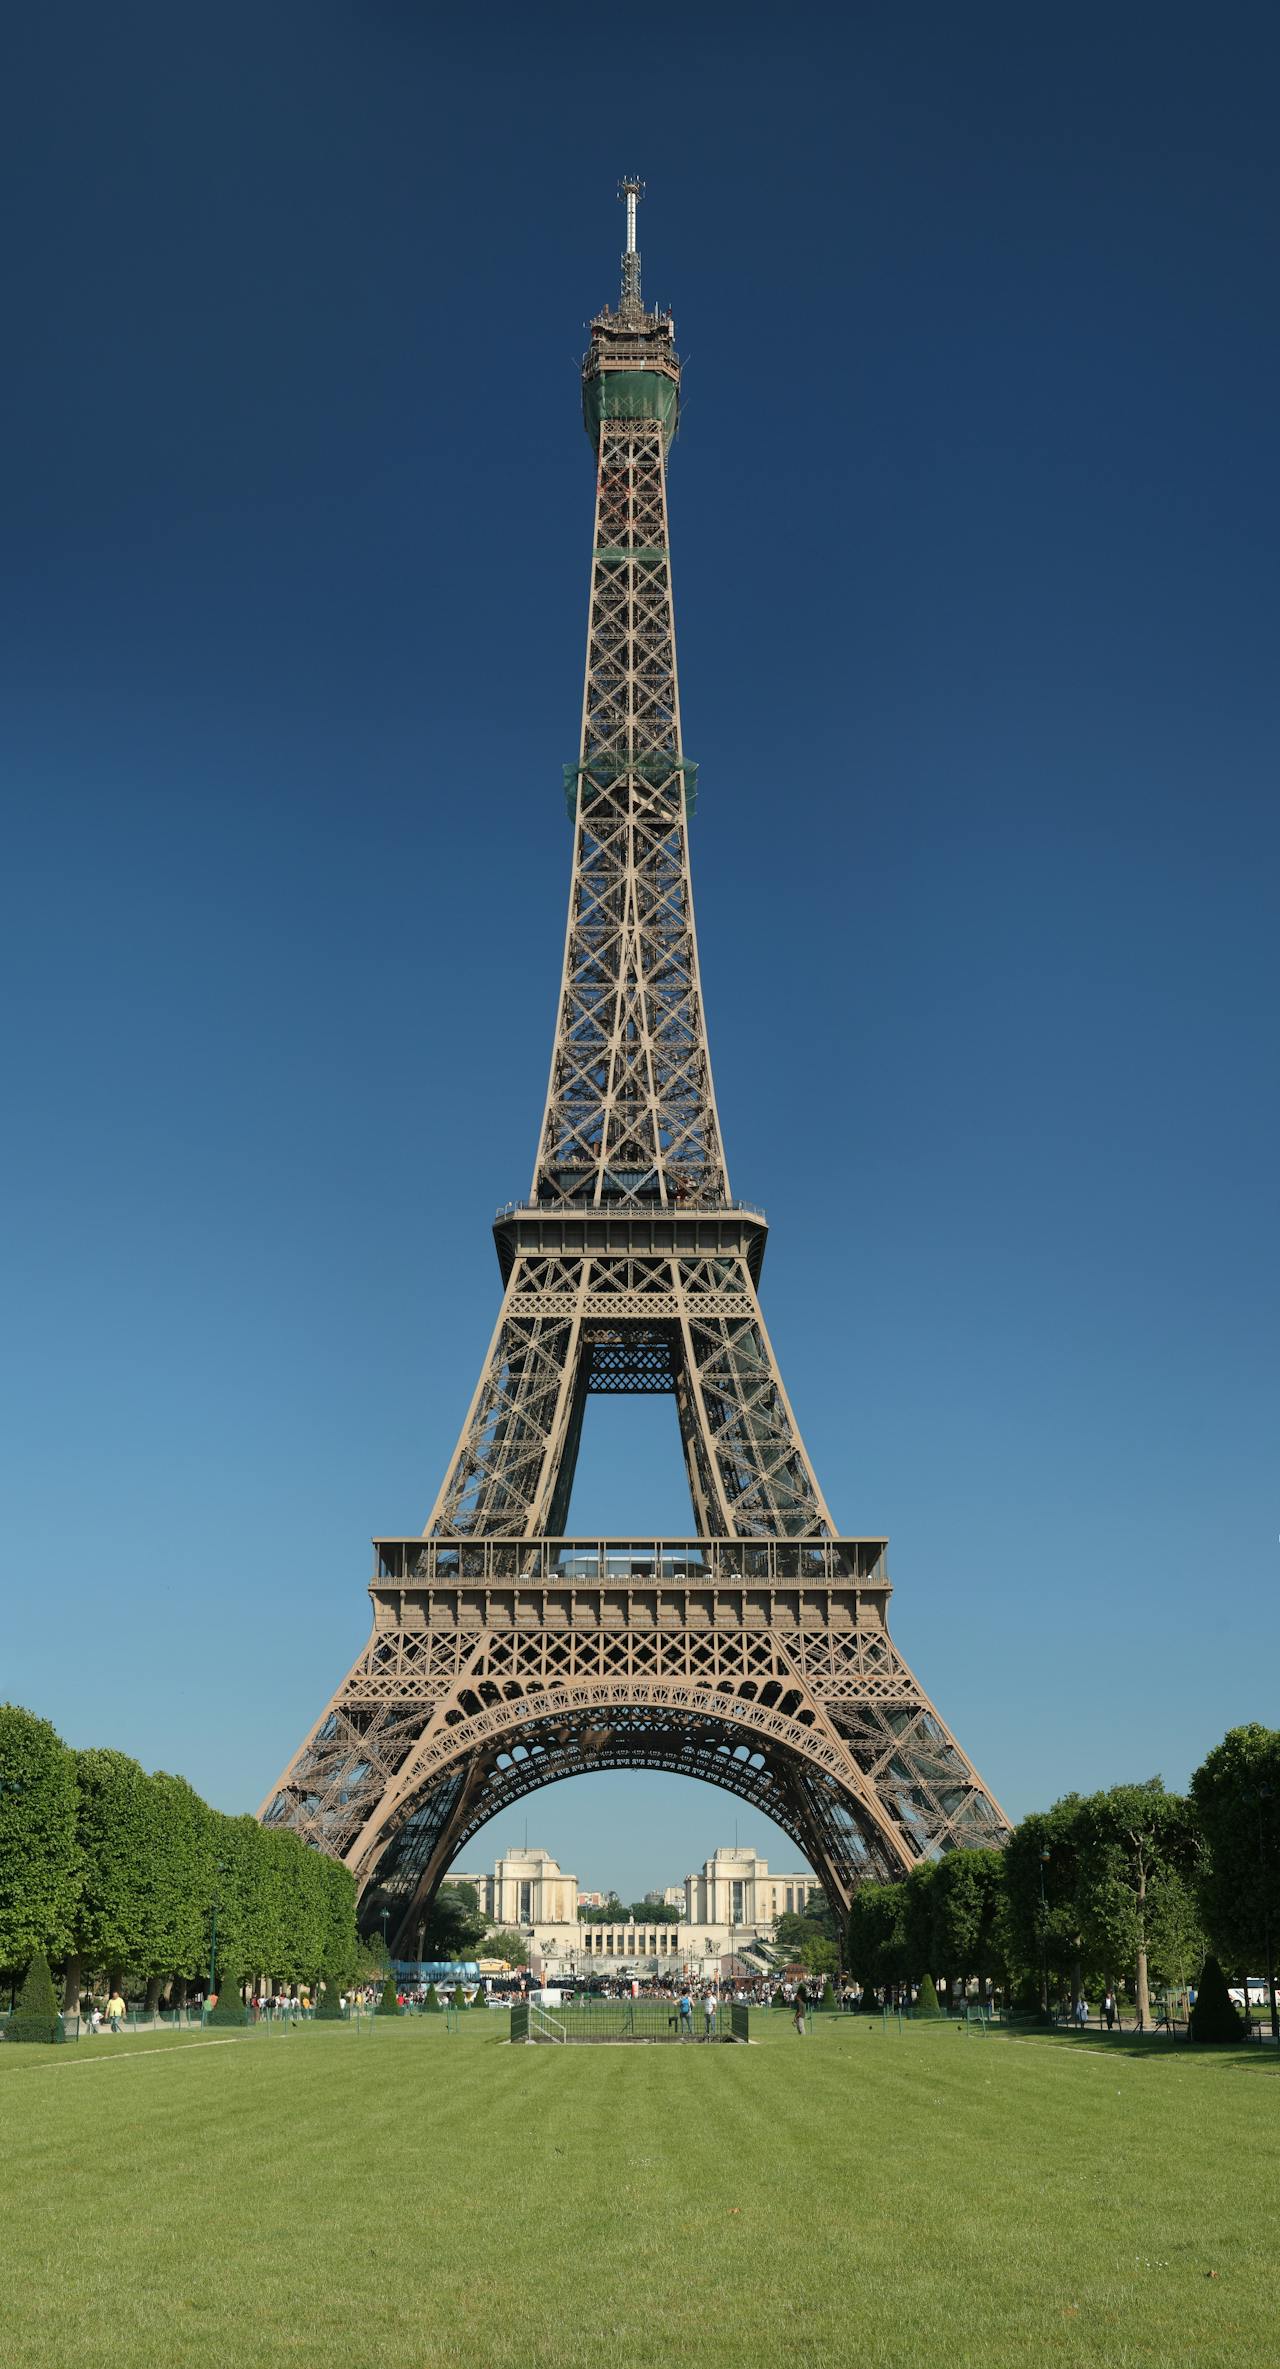 De Eiffeltoren in Parijs met een strakblauwe lucht.